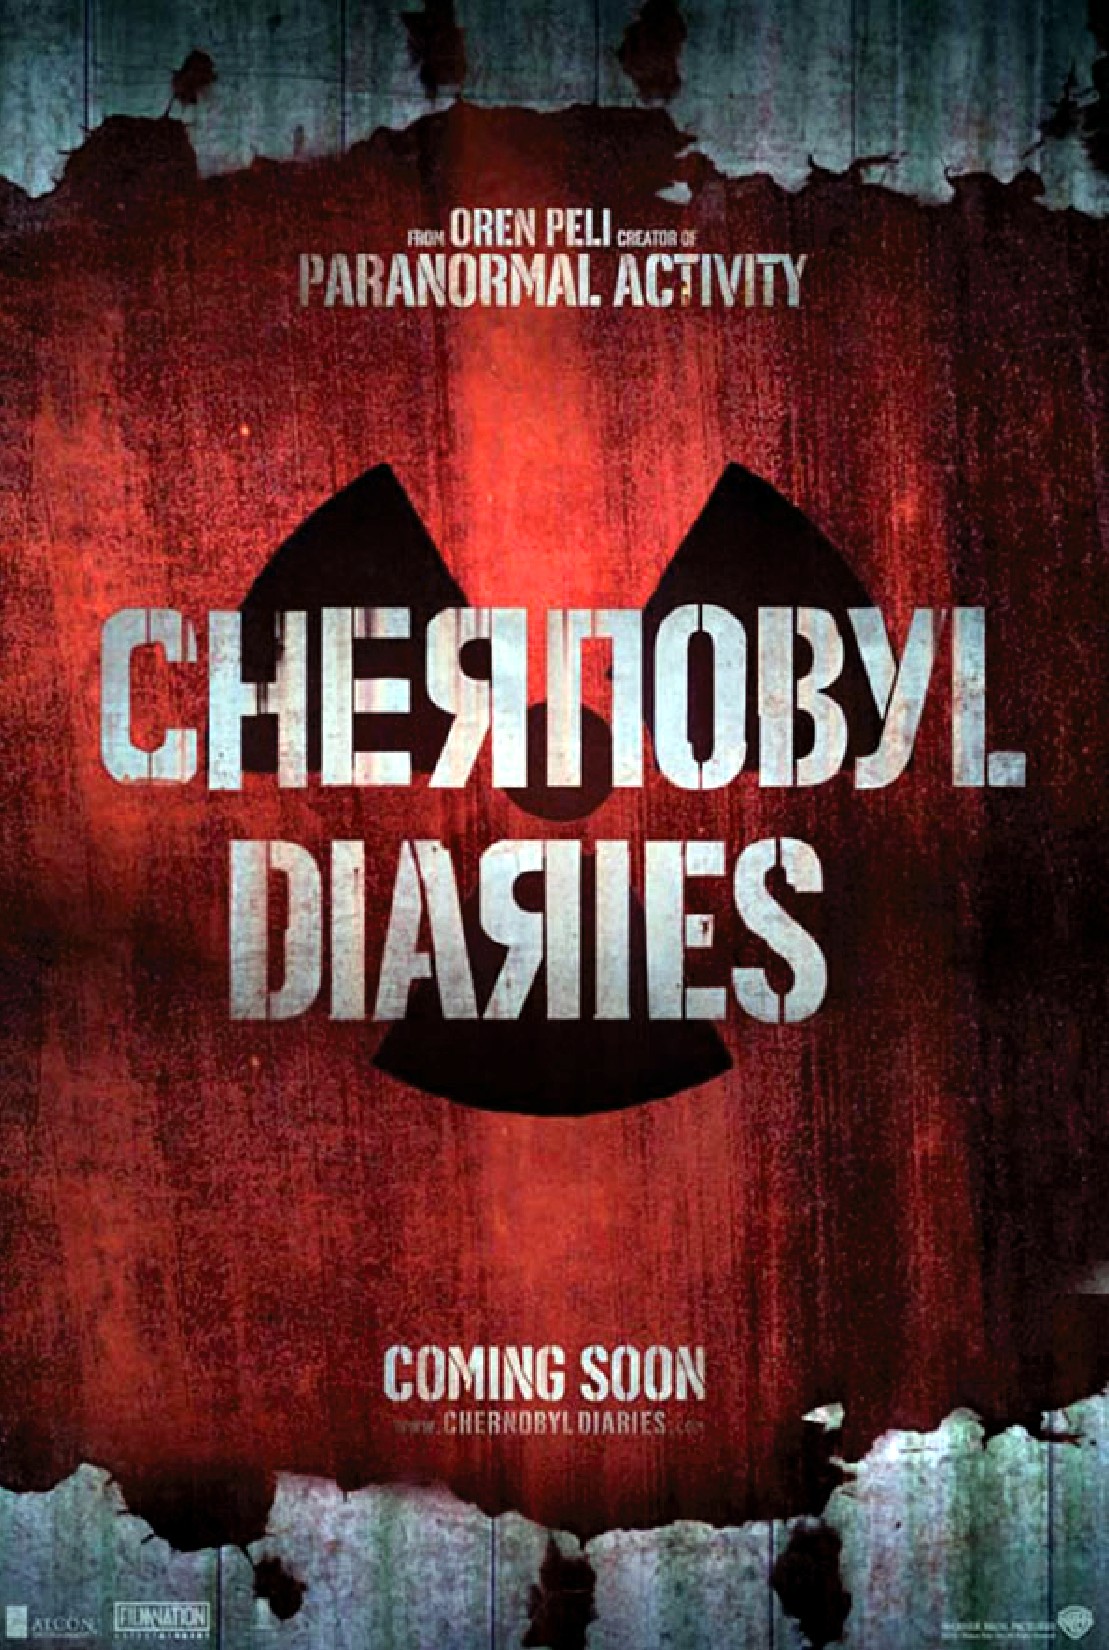 Chernobyl Diaries Припять скачать торрент бесплатно без регистрации и